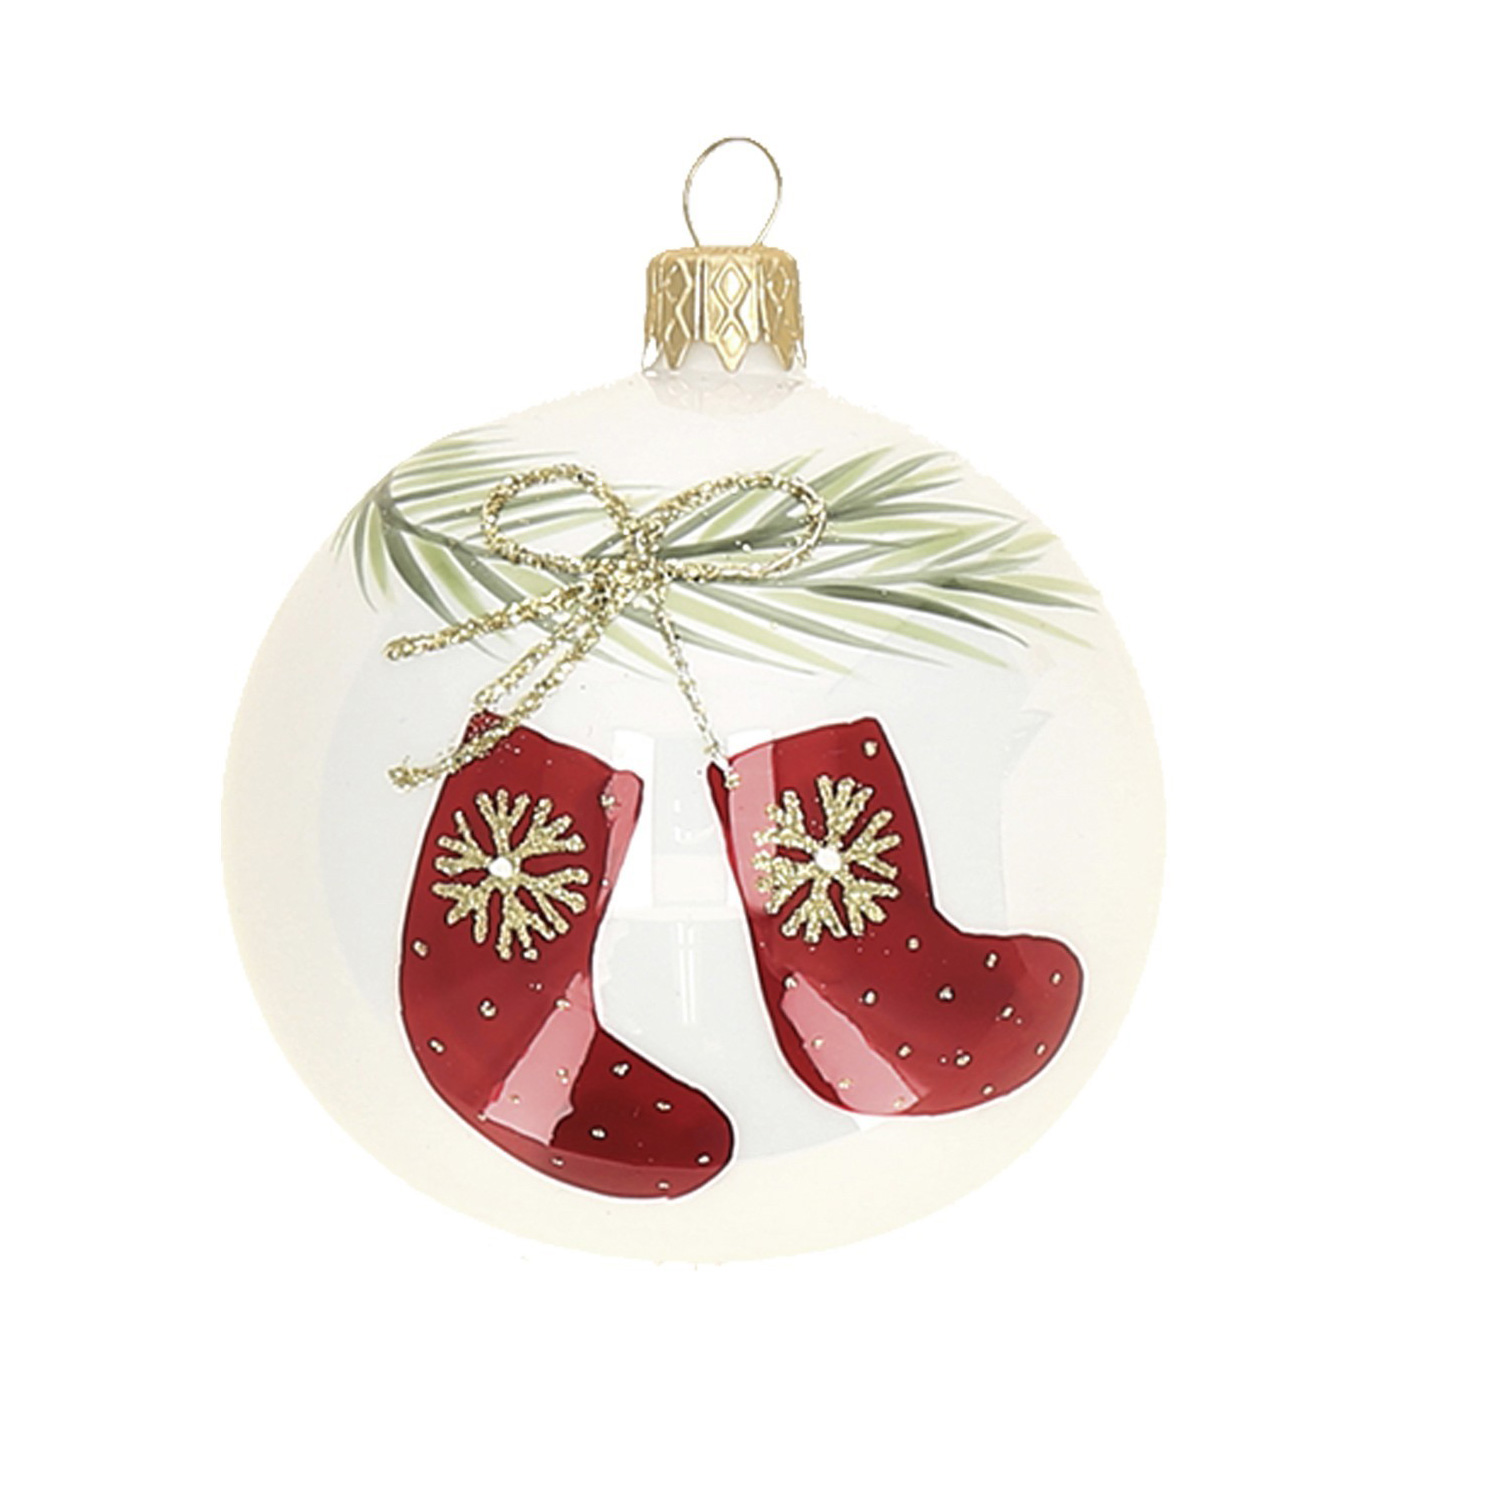 Weihnachtskugel "Stiefel" rot-grün-weiß, D. ca. 8 cm, handbemalt, weiß glänzend